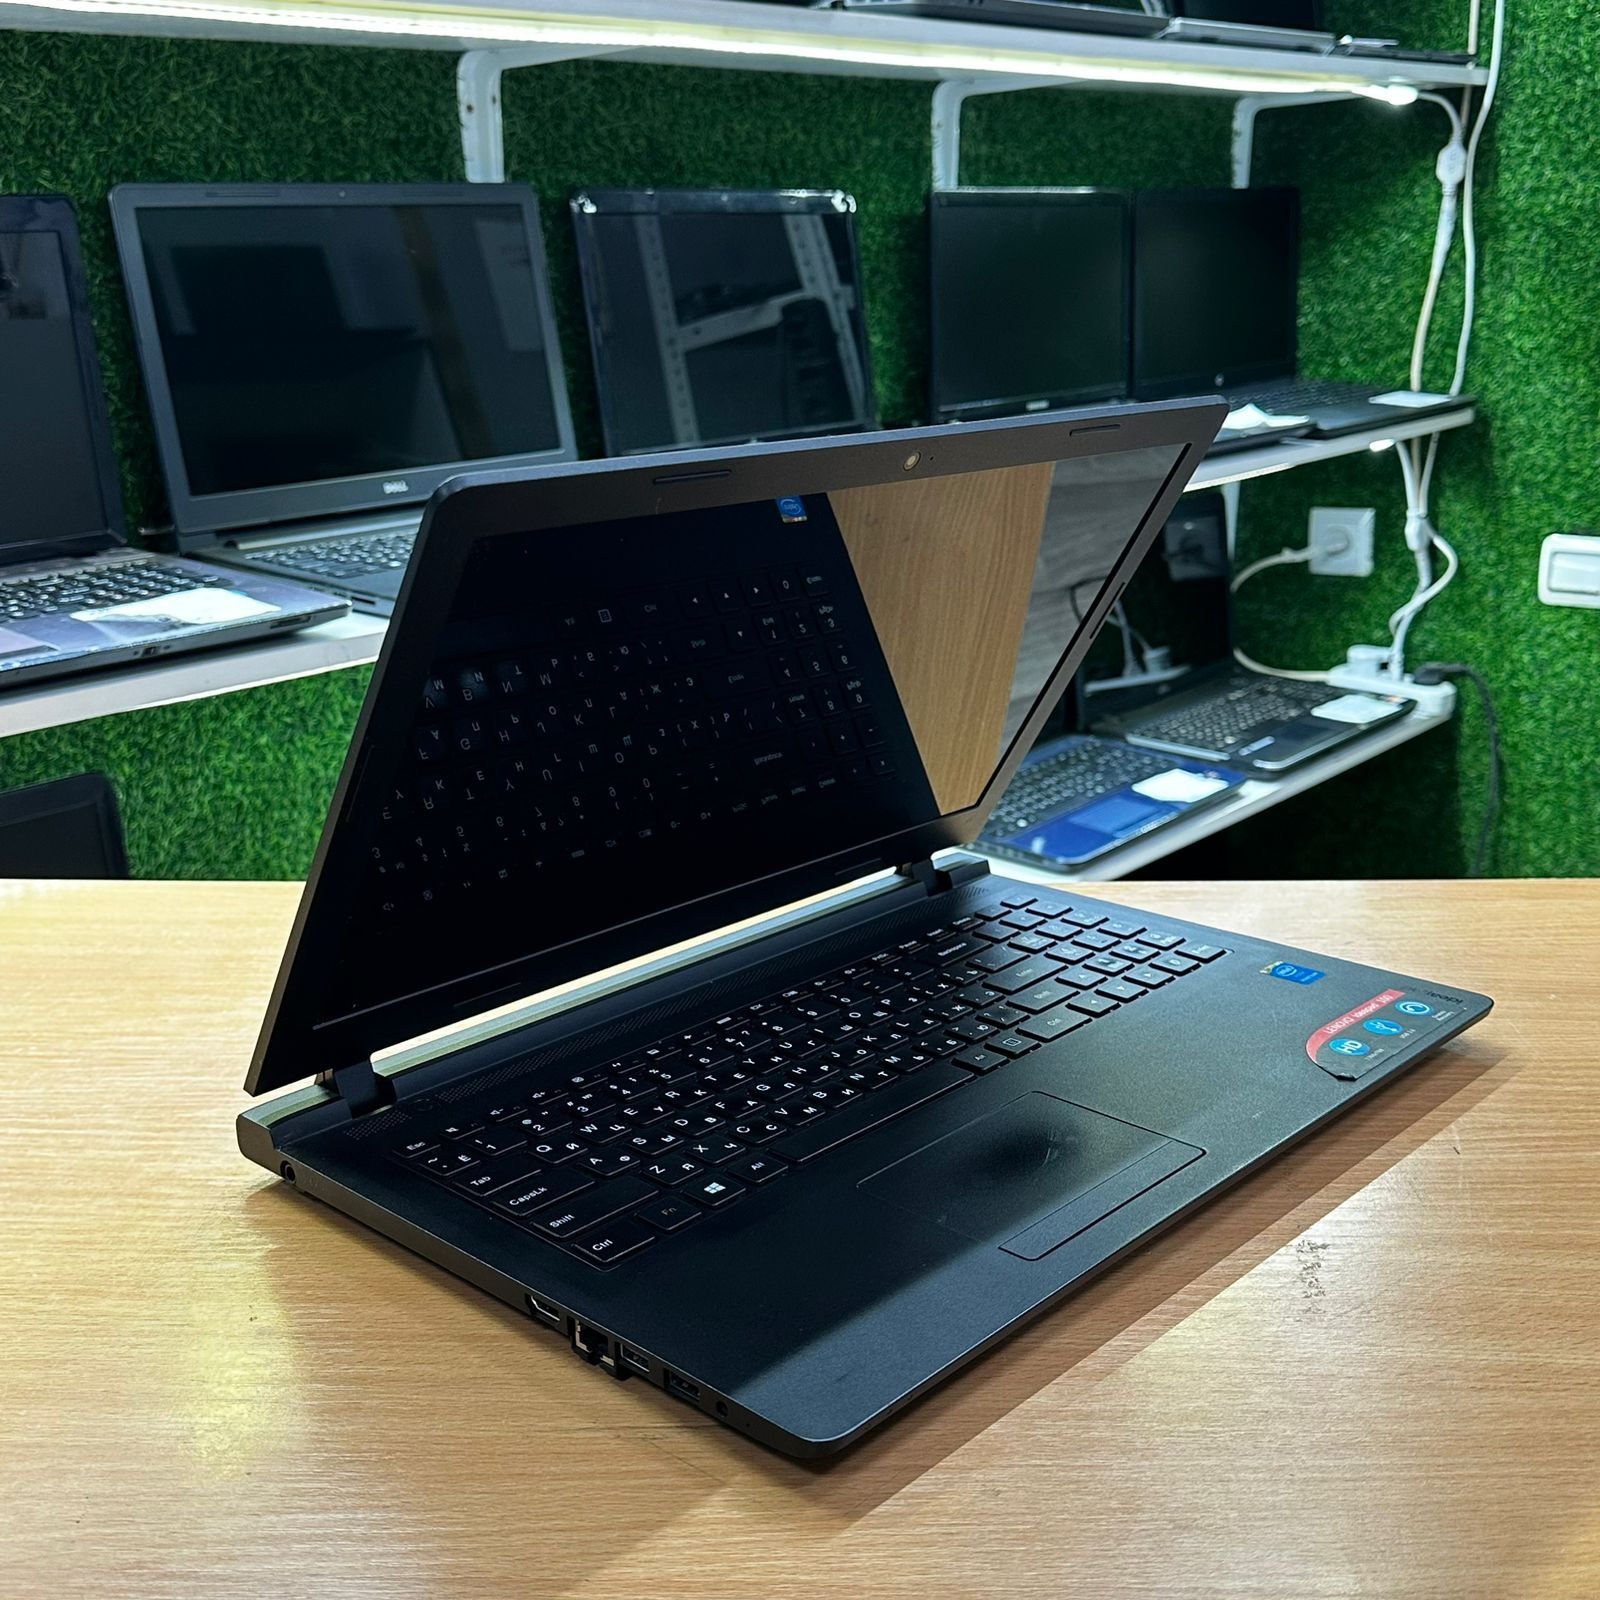 Ноутбук для офиса шустрый ОЗУ 4Gb SSD 128Gb+500Gb